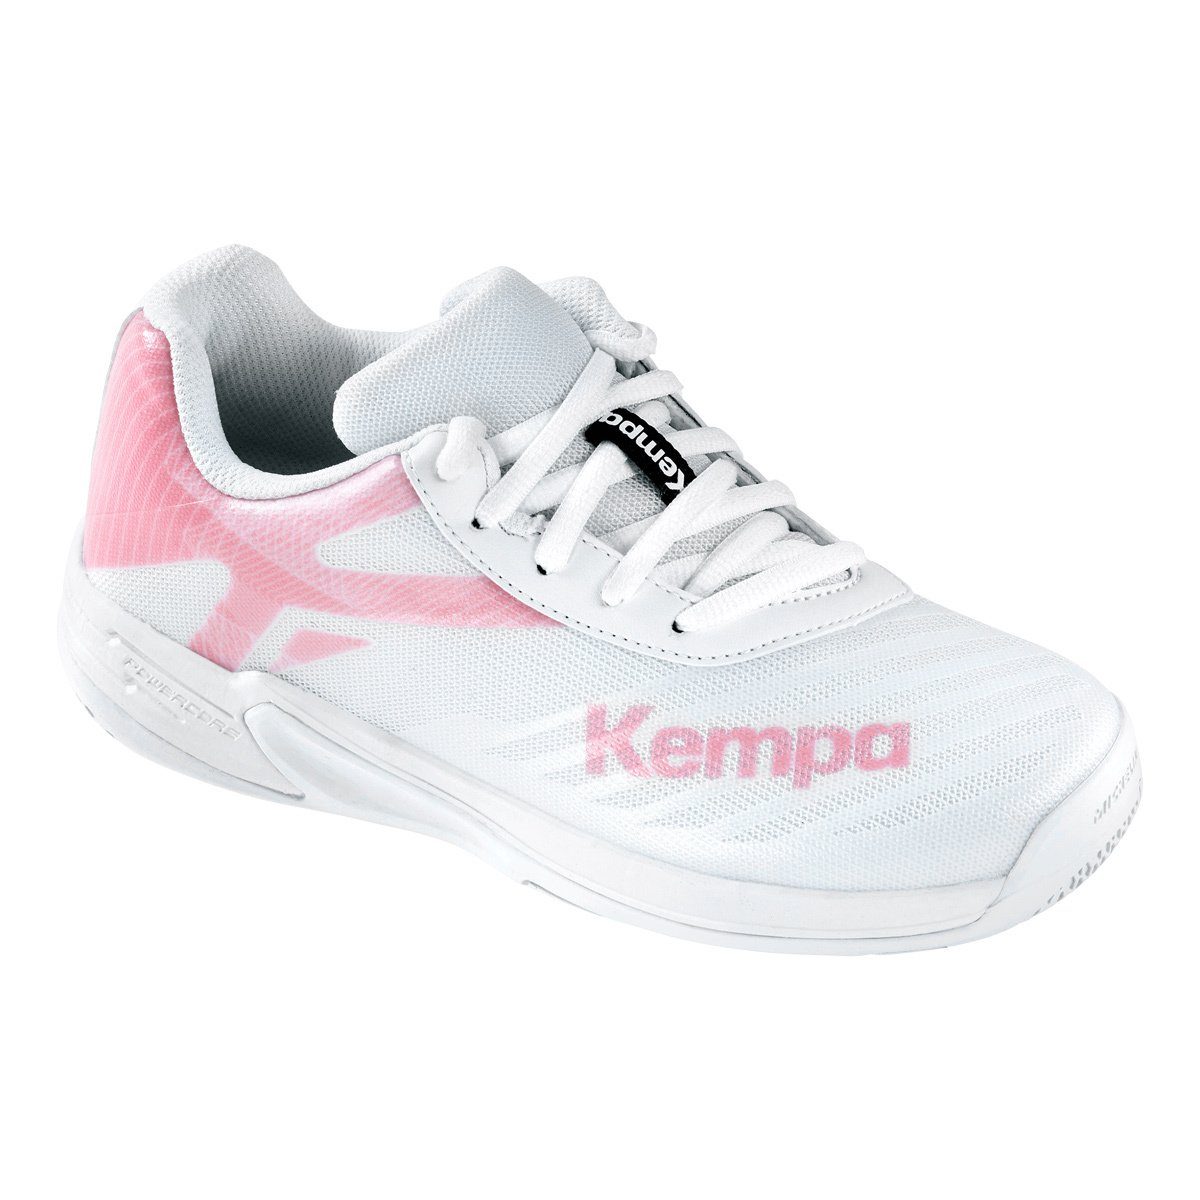 Kempa Kempa Hallen-Sport-Schuhe Hallenschuh weiß/rose cloud